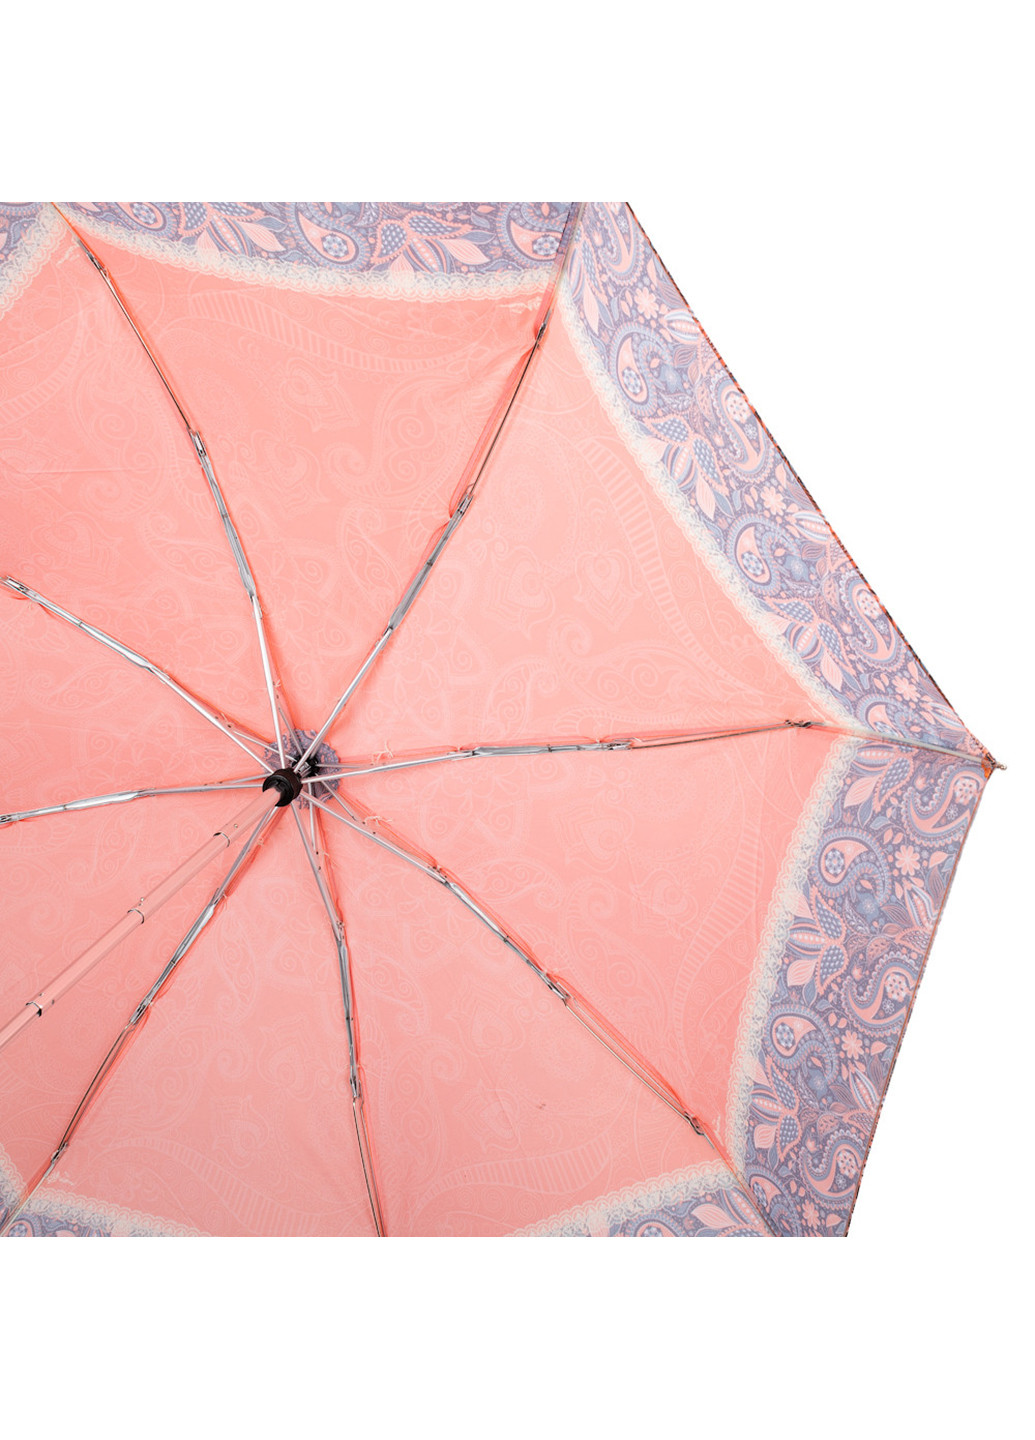 Жіноча складна парасолька механічна 105 см ArtRain (255710201)